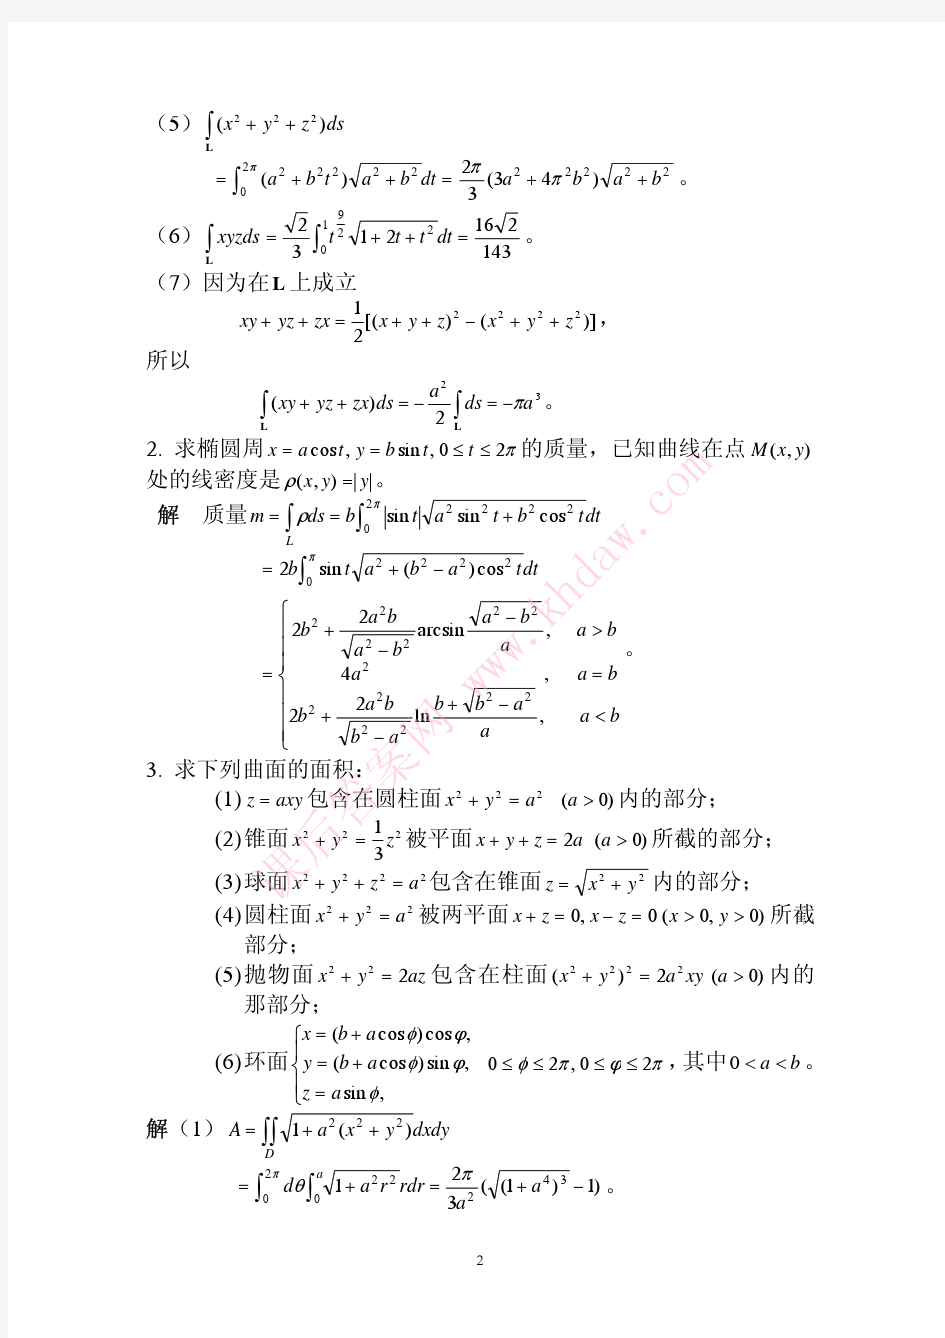 数学分析课后习题答案--高教第二版(陈纪修)--14章